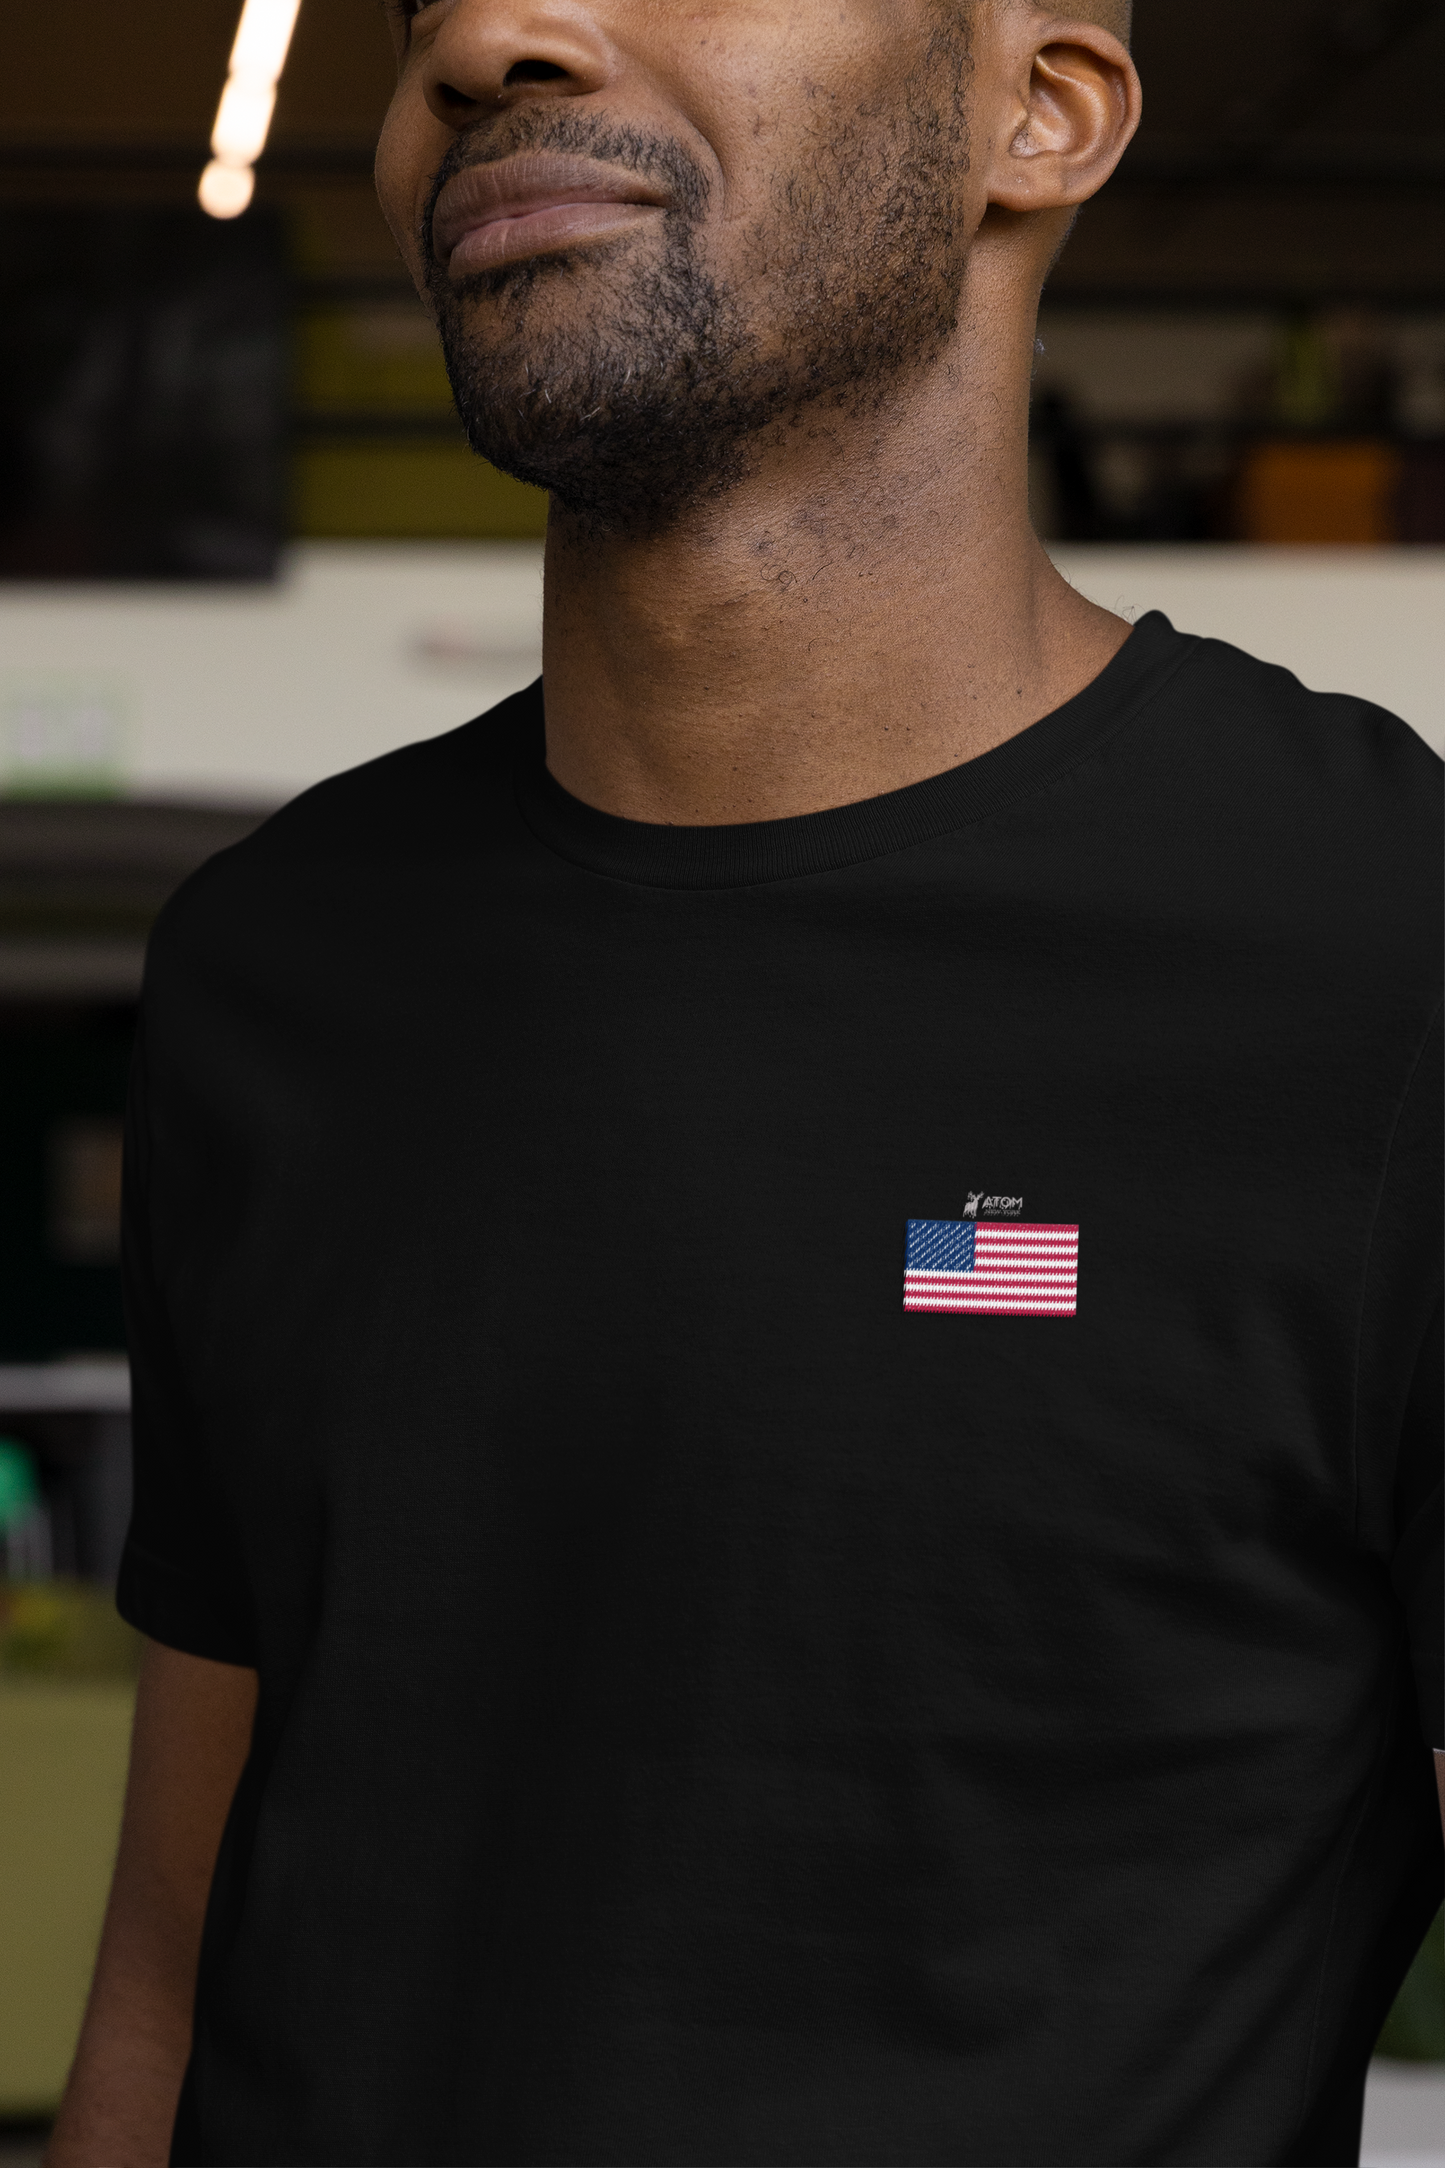 ATOM US Flag Classic Embroidered Logo Basic Black T-Shirt For Men